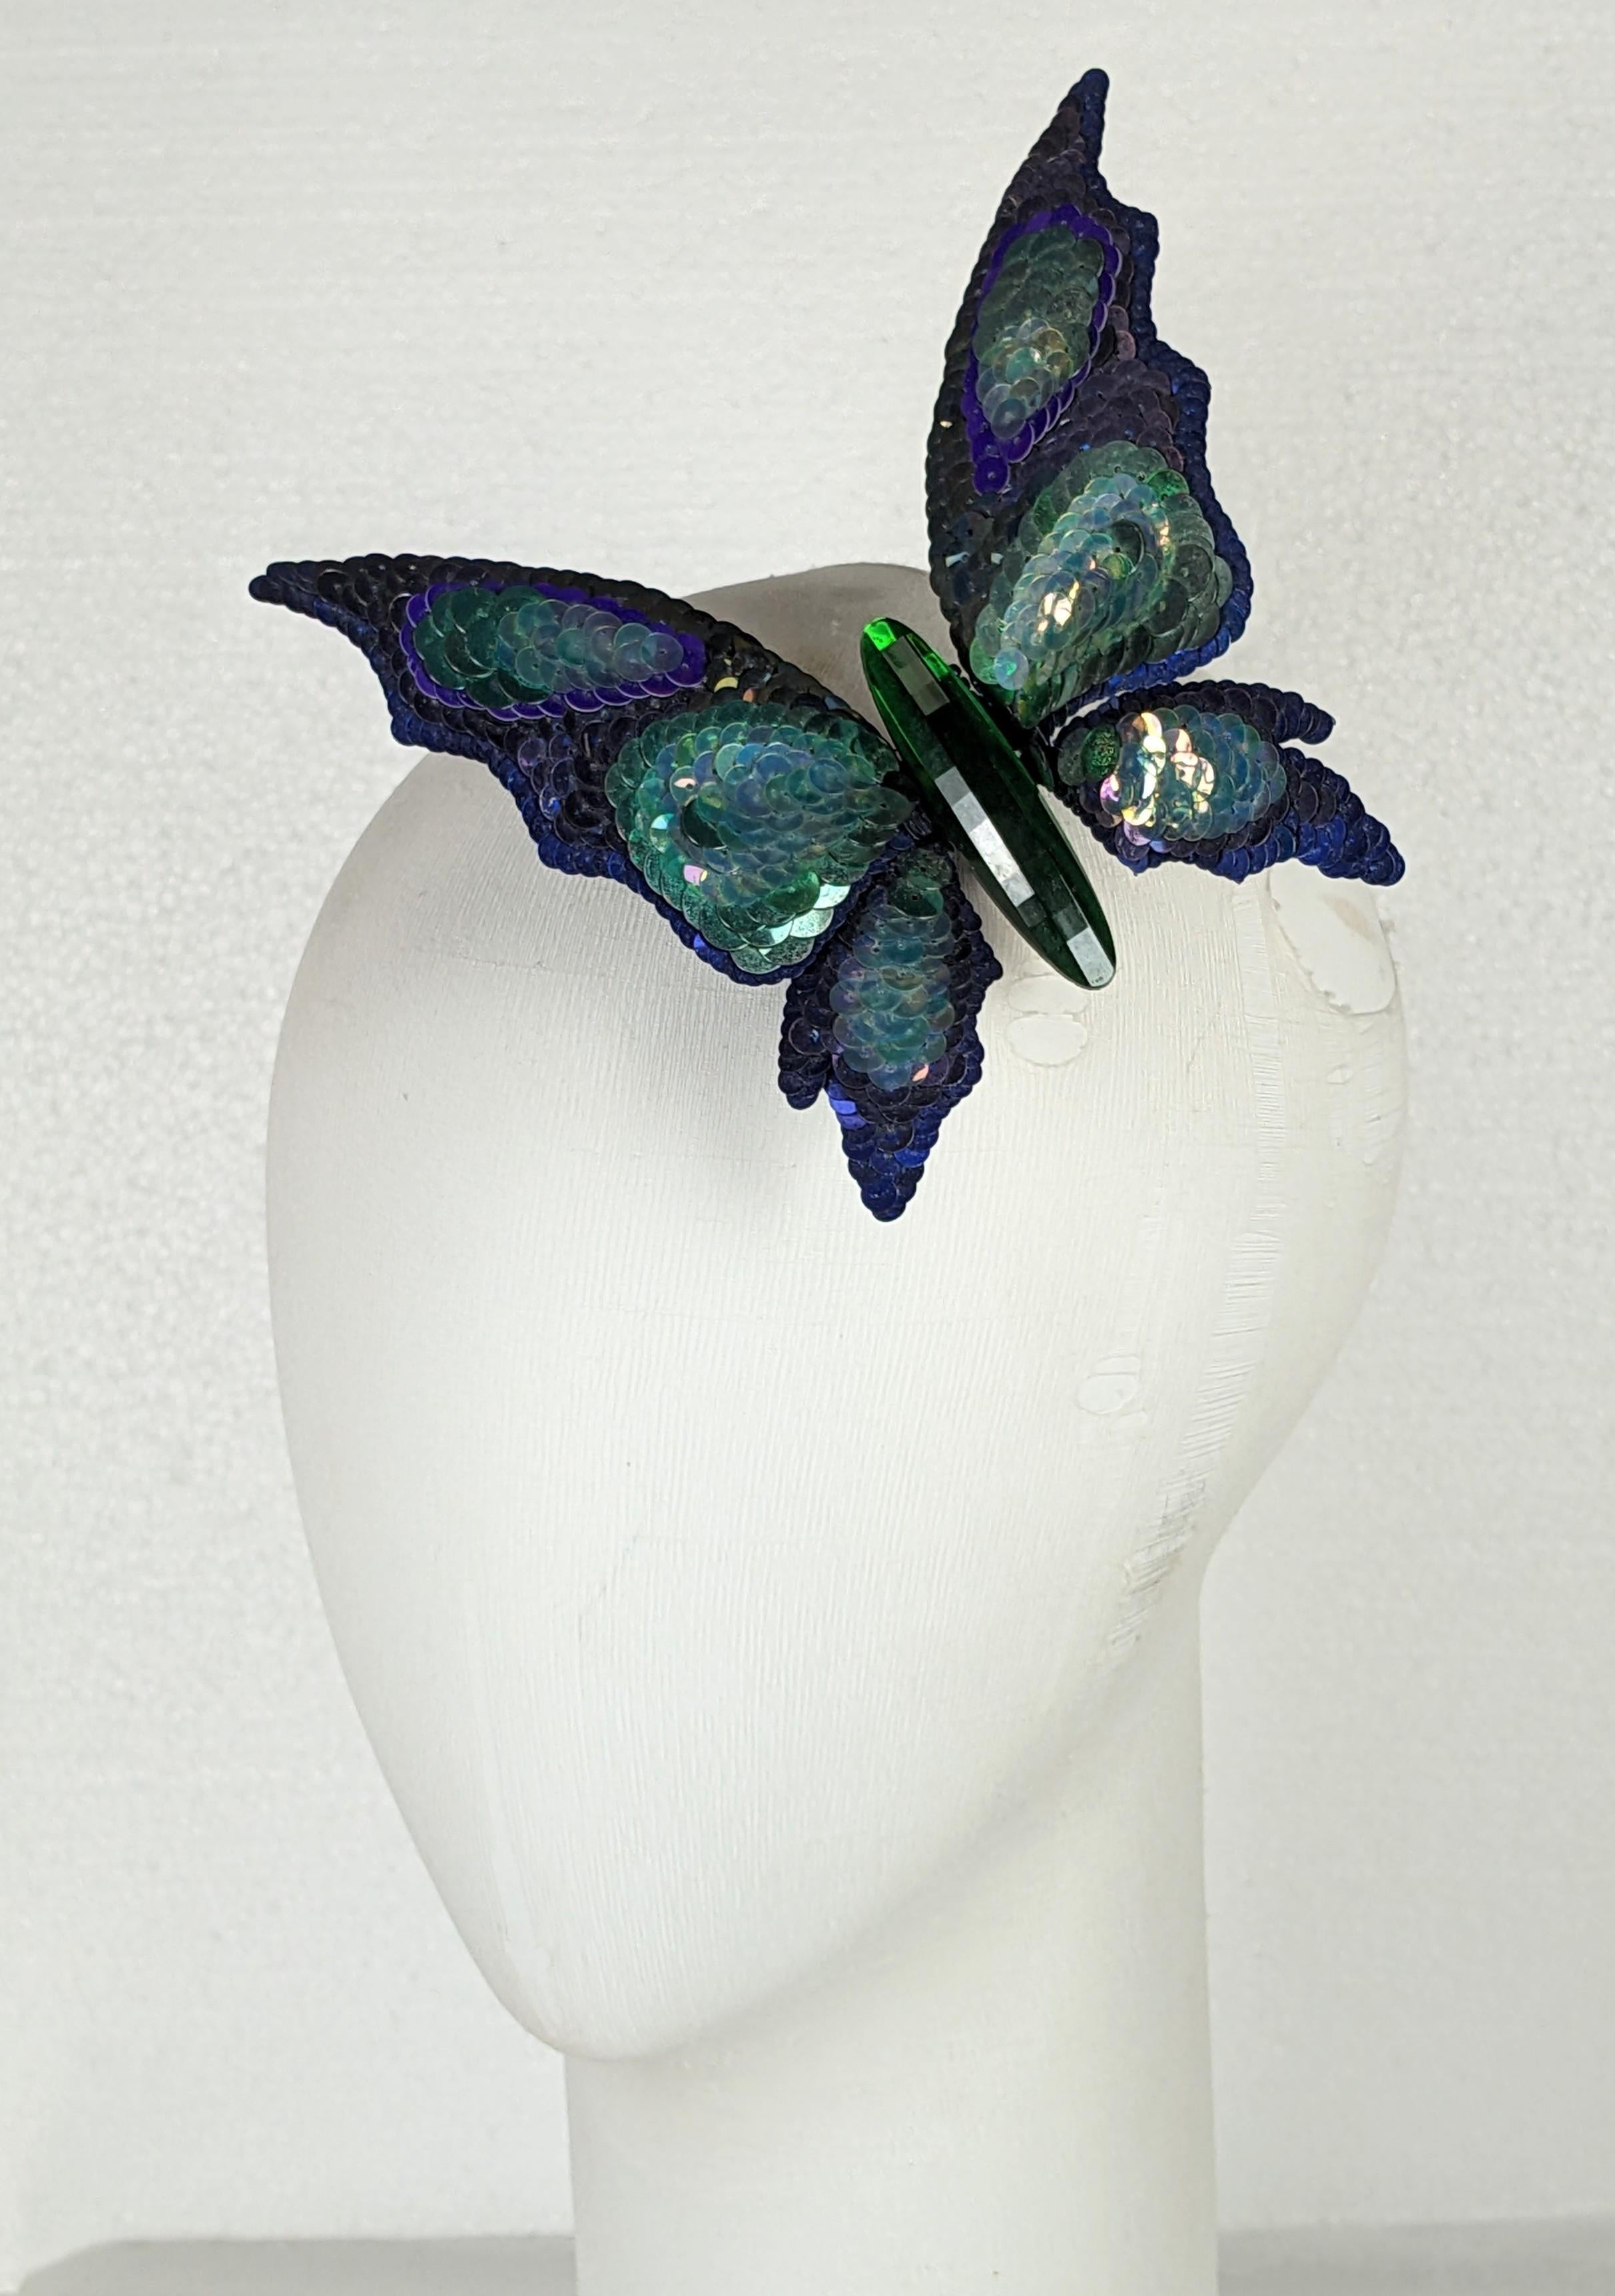 Yves Saint Laurent Haute Couture Pailletten-Swarovski-Schmetterling (Kunsthandwerker*in) im Angebot